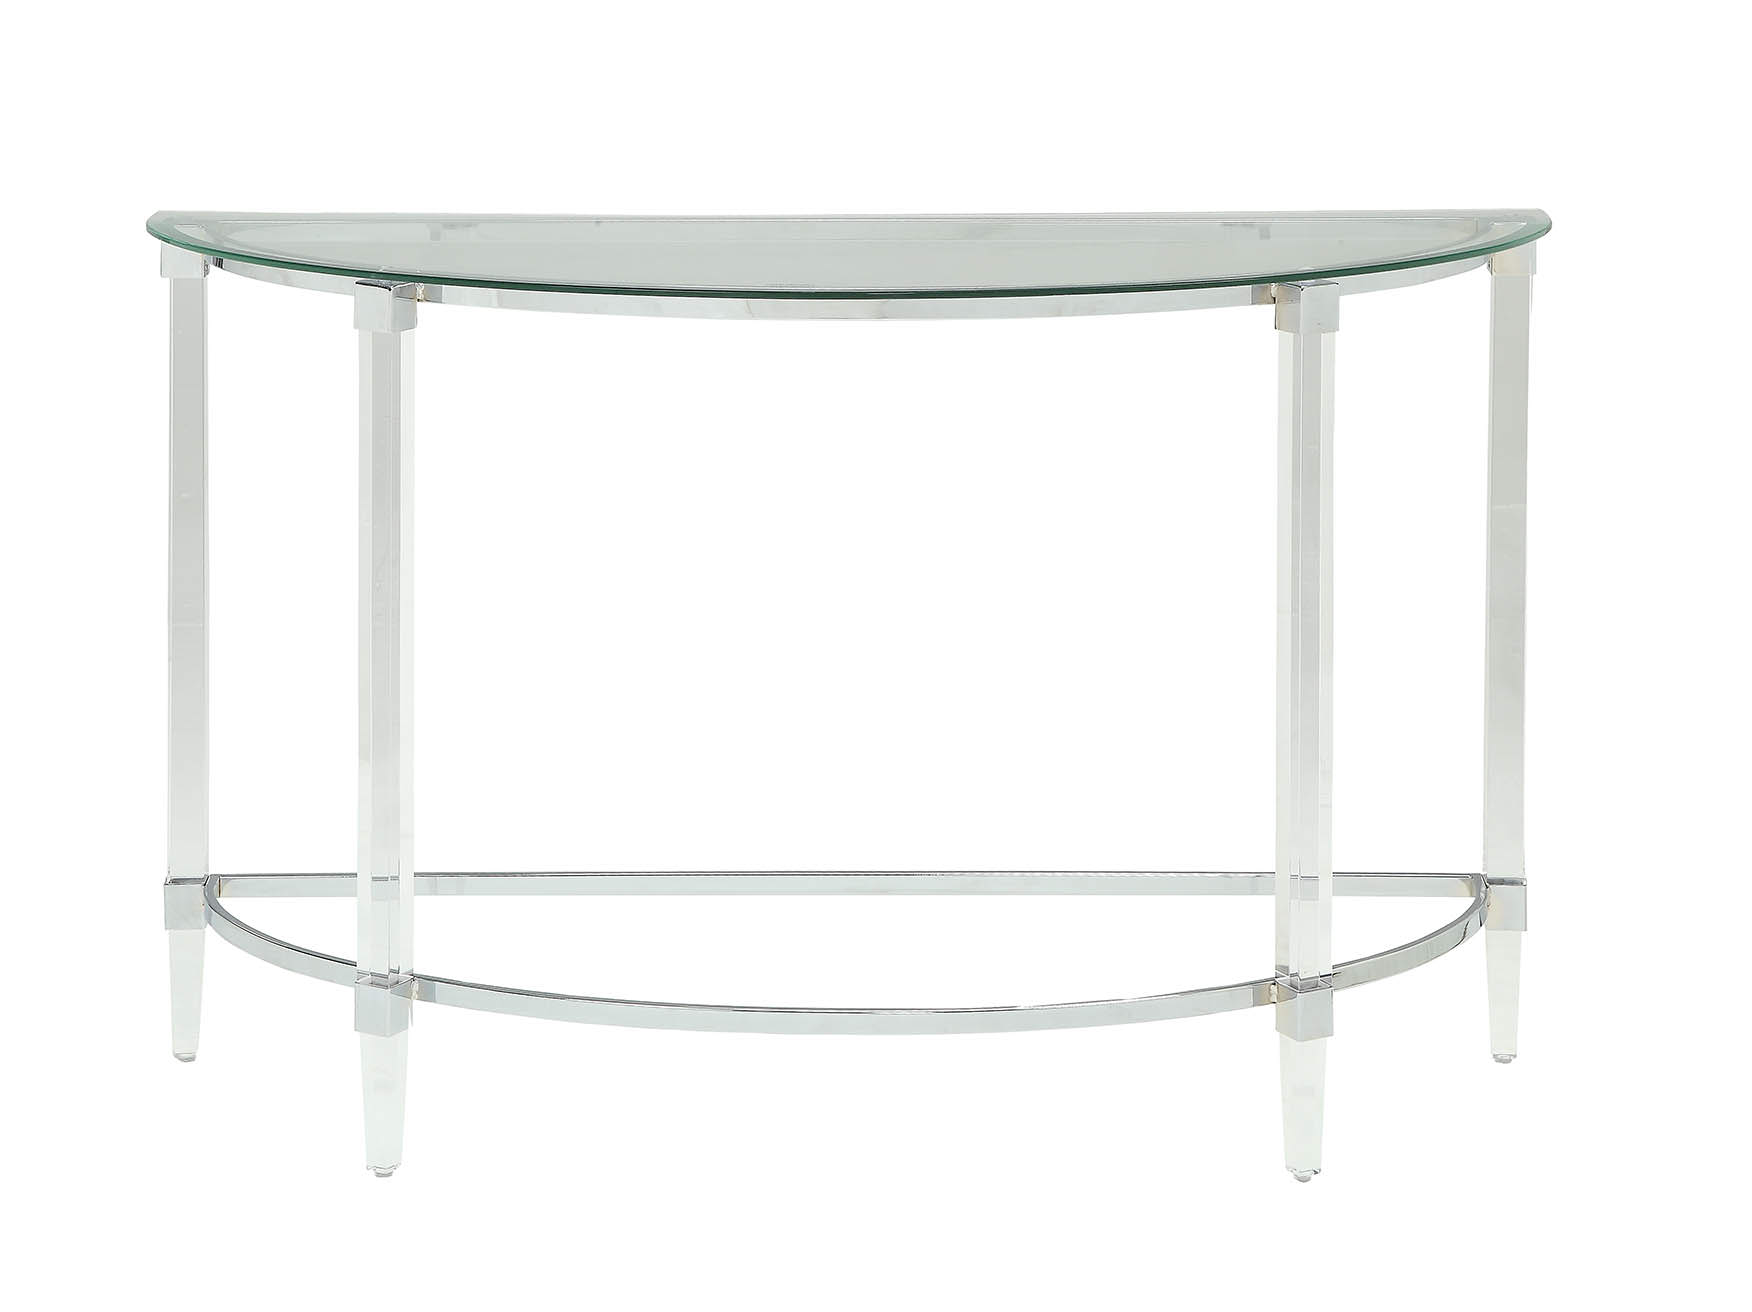 18" X 48" X 29" Clear Acrylic Chrome Glass Metal Sofa Table